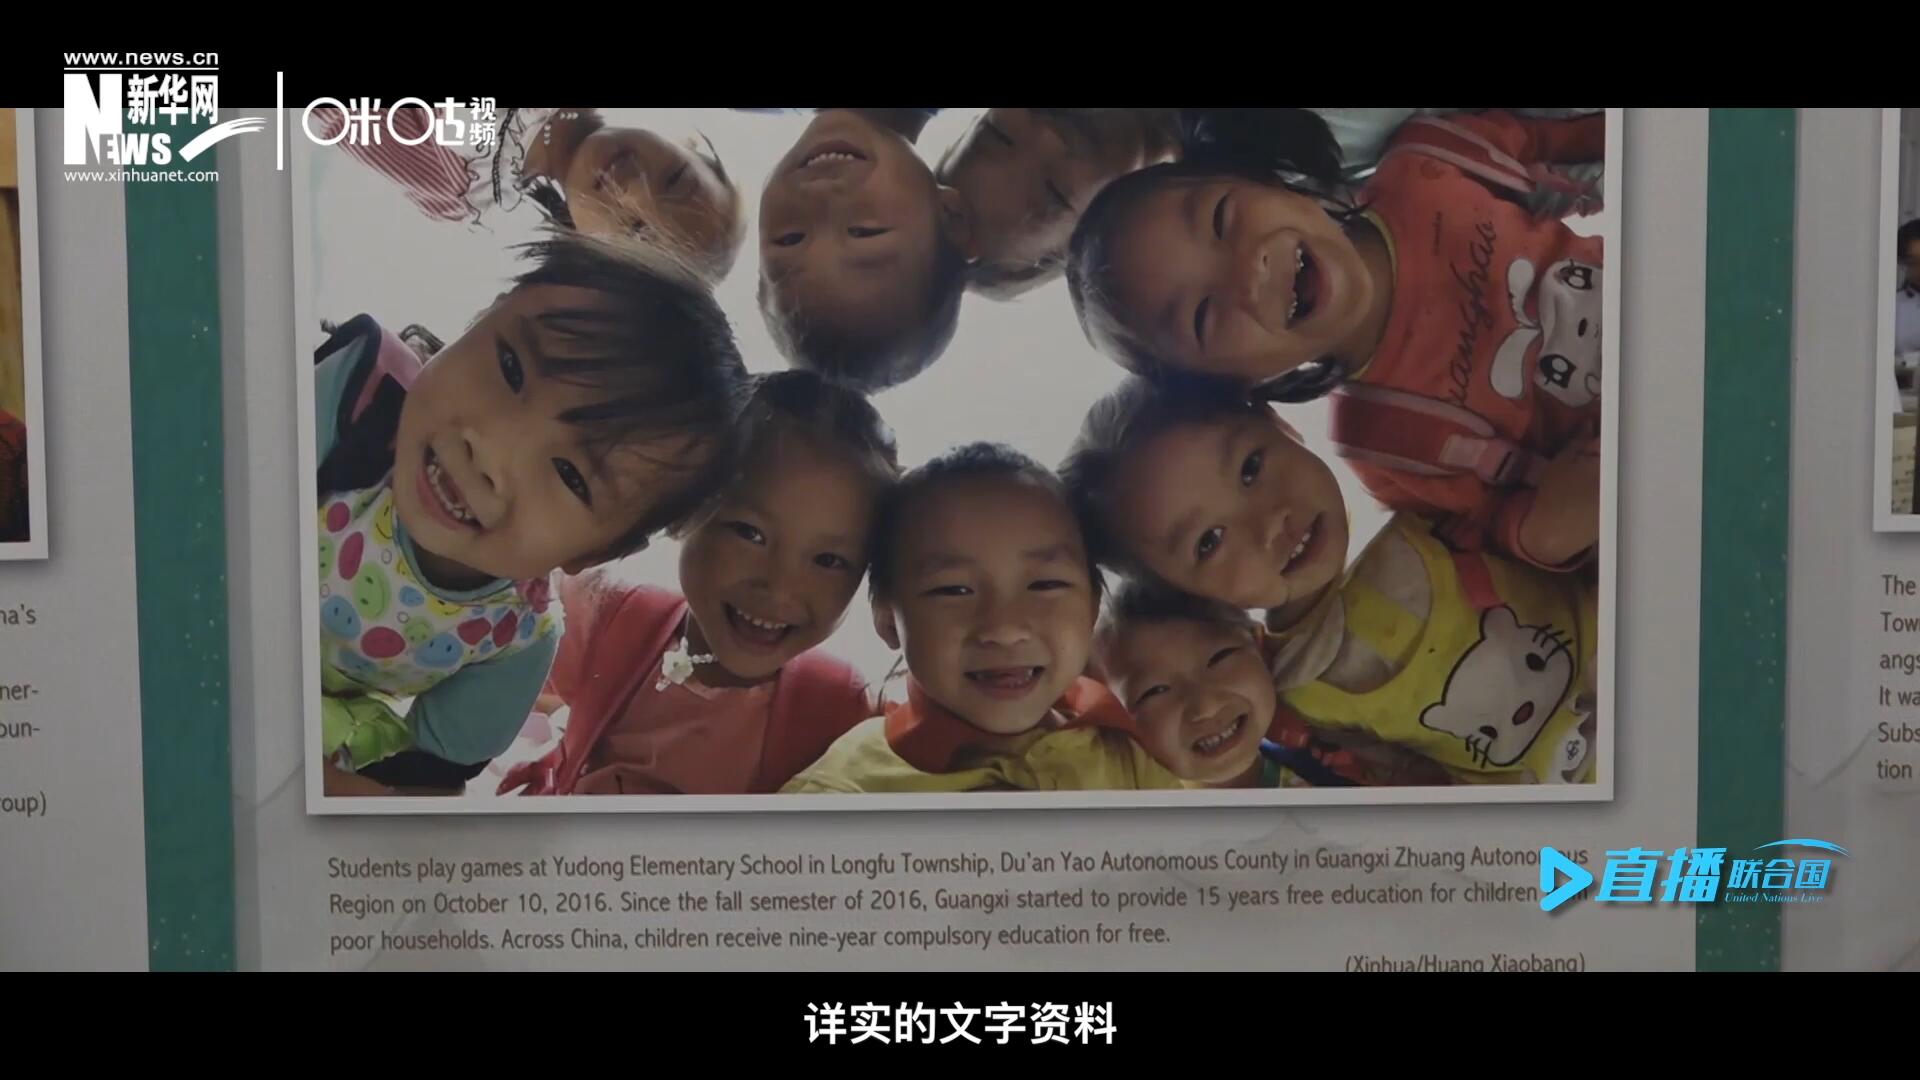 展览通过鲜活生动的图片、视频短片、详实的文字资料，讲述了中国精准扶贫、脱贫攻坚的故事，向世界展示中国扶贫工作成就，介绍全球减贫的中国方案。